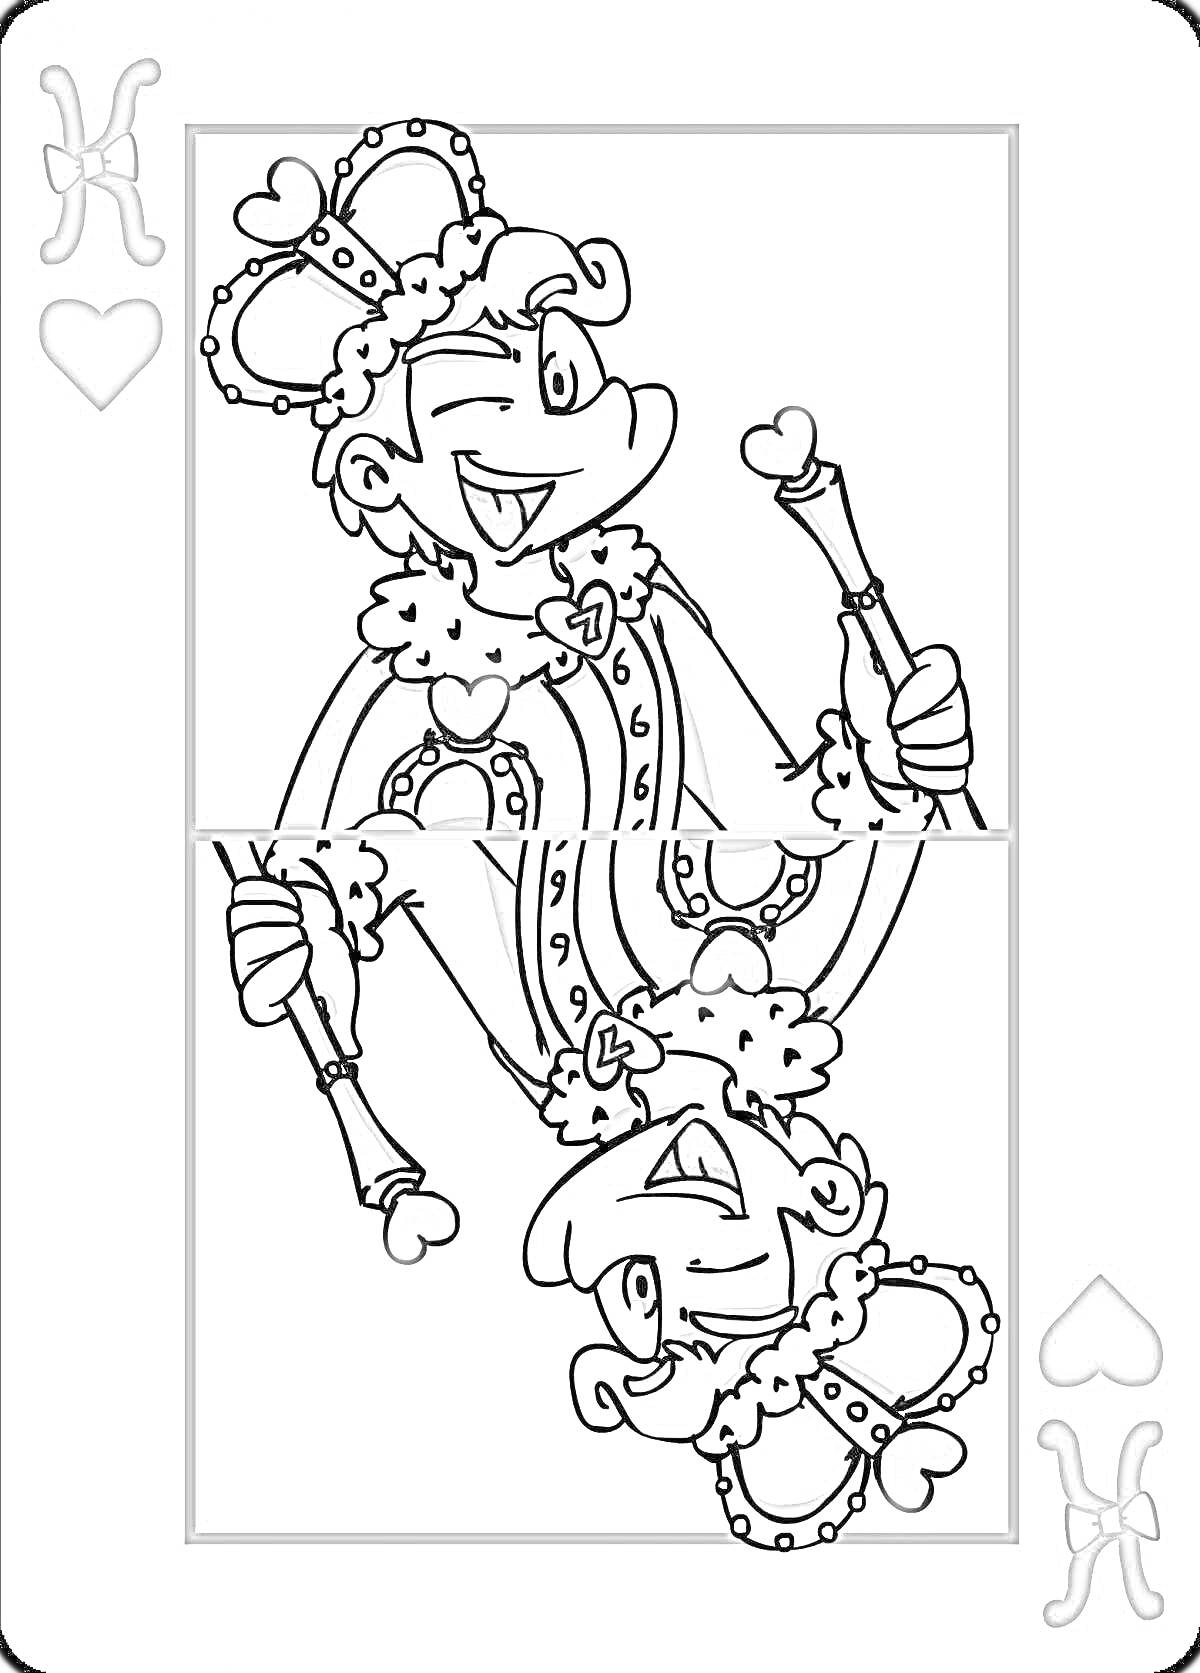 Раскраска Король червей из колоды карт комикса